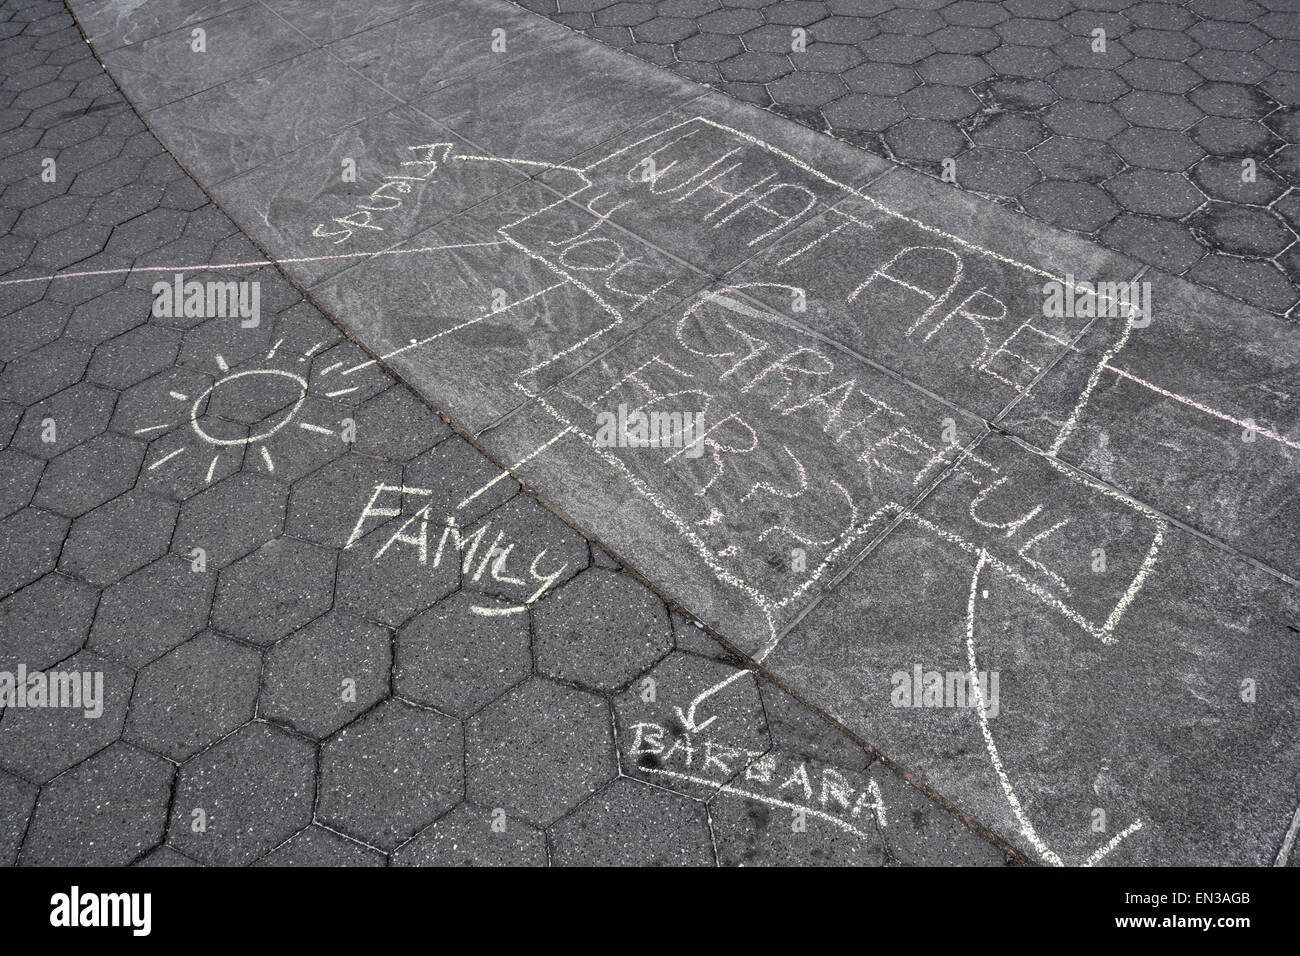 Un dibujo de tiza por NYU estudiantes para una clase de educación sobre el tema "Qué están agradecidos." En Washington Square Park, en la ciudad de Nueva York. Foto de stock